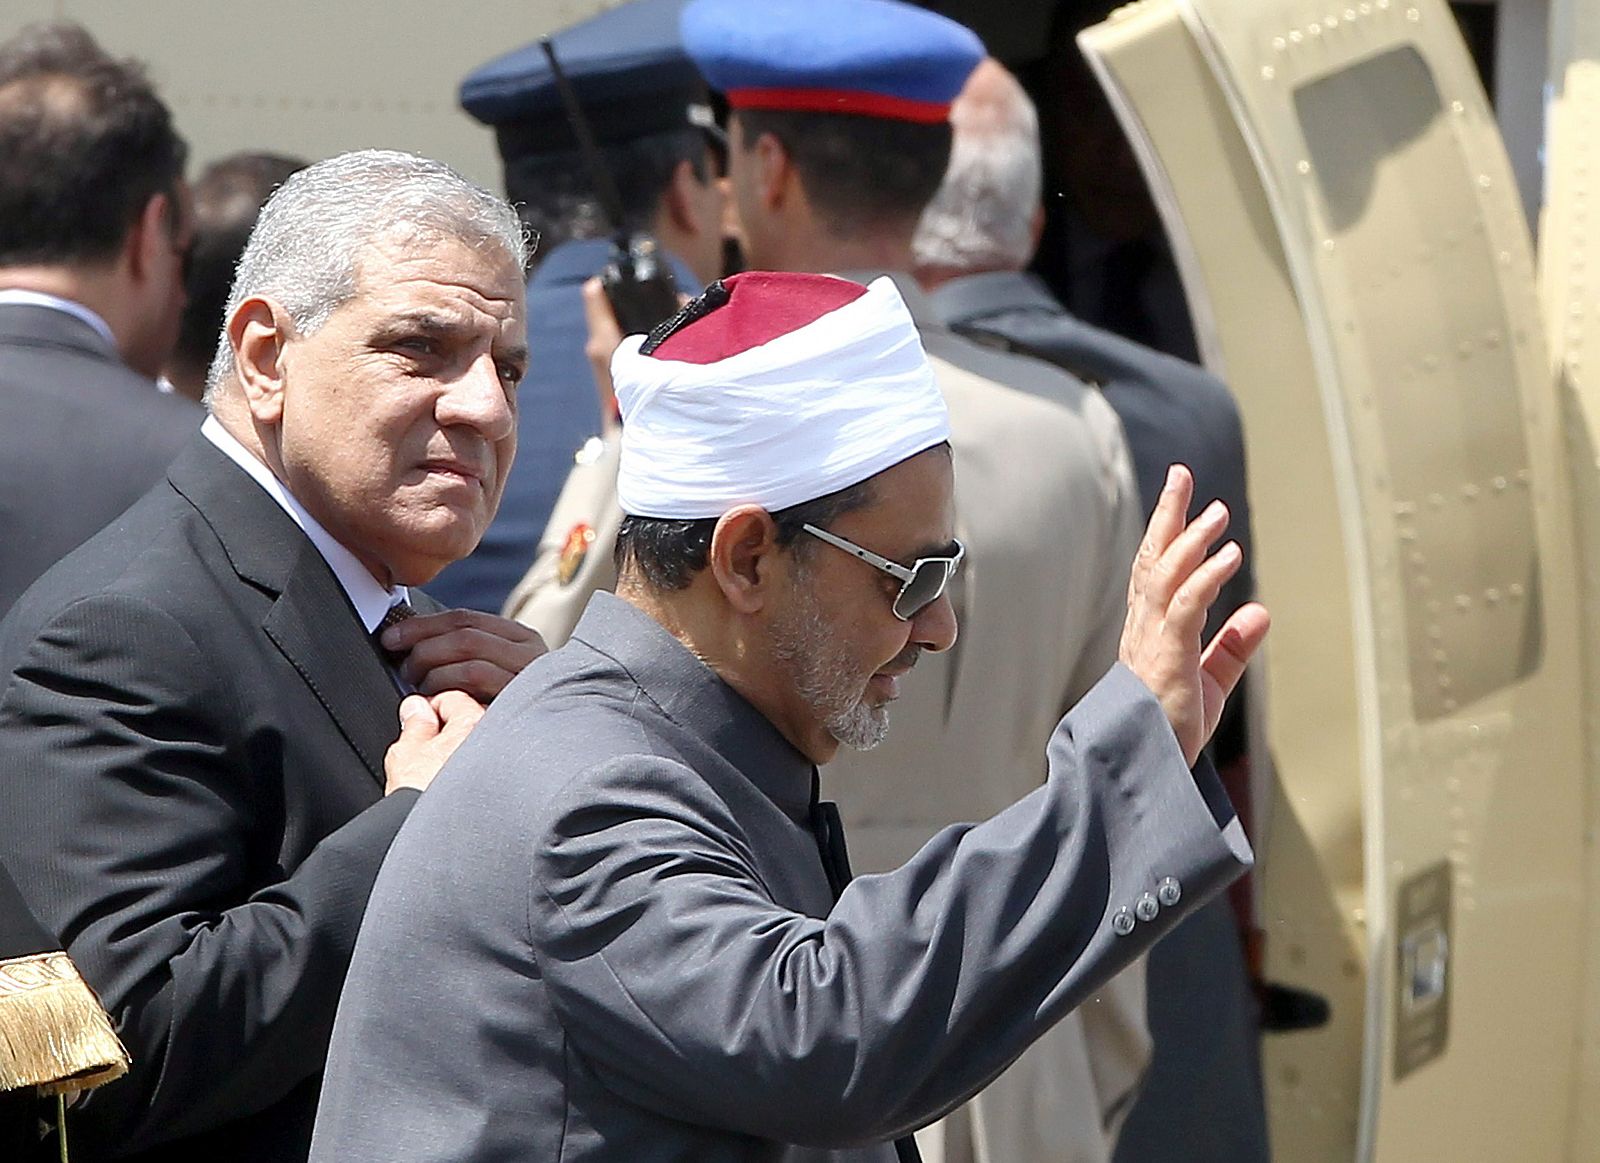 El primer ministro Ibrahim Mehleb (izquierda) acude junto al gran imán de Al Azhar a la investidura de Al Sisi como presidente de Egipto.